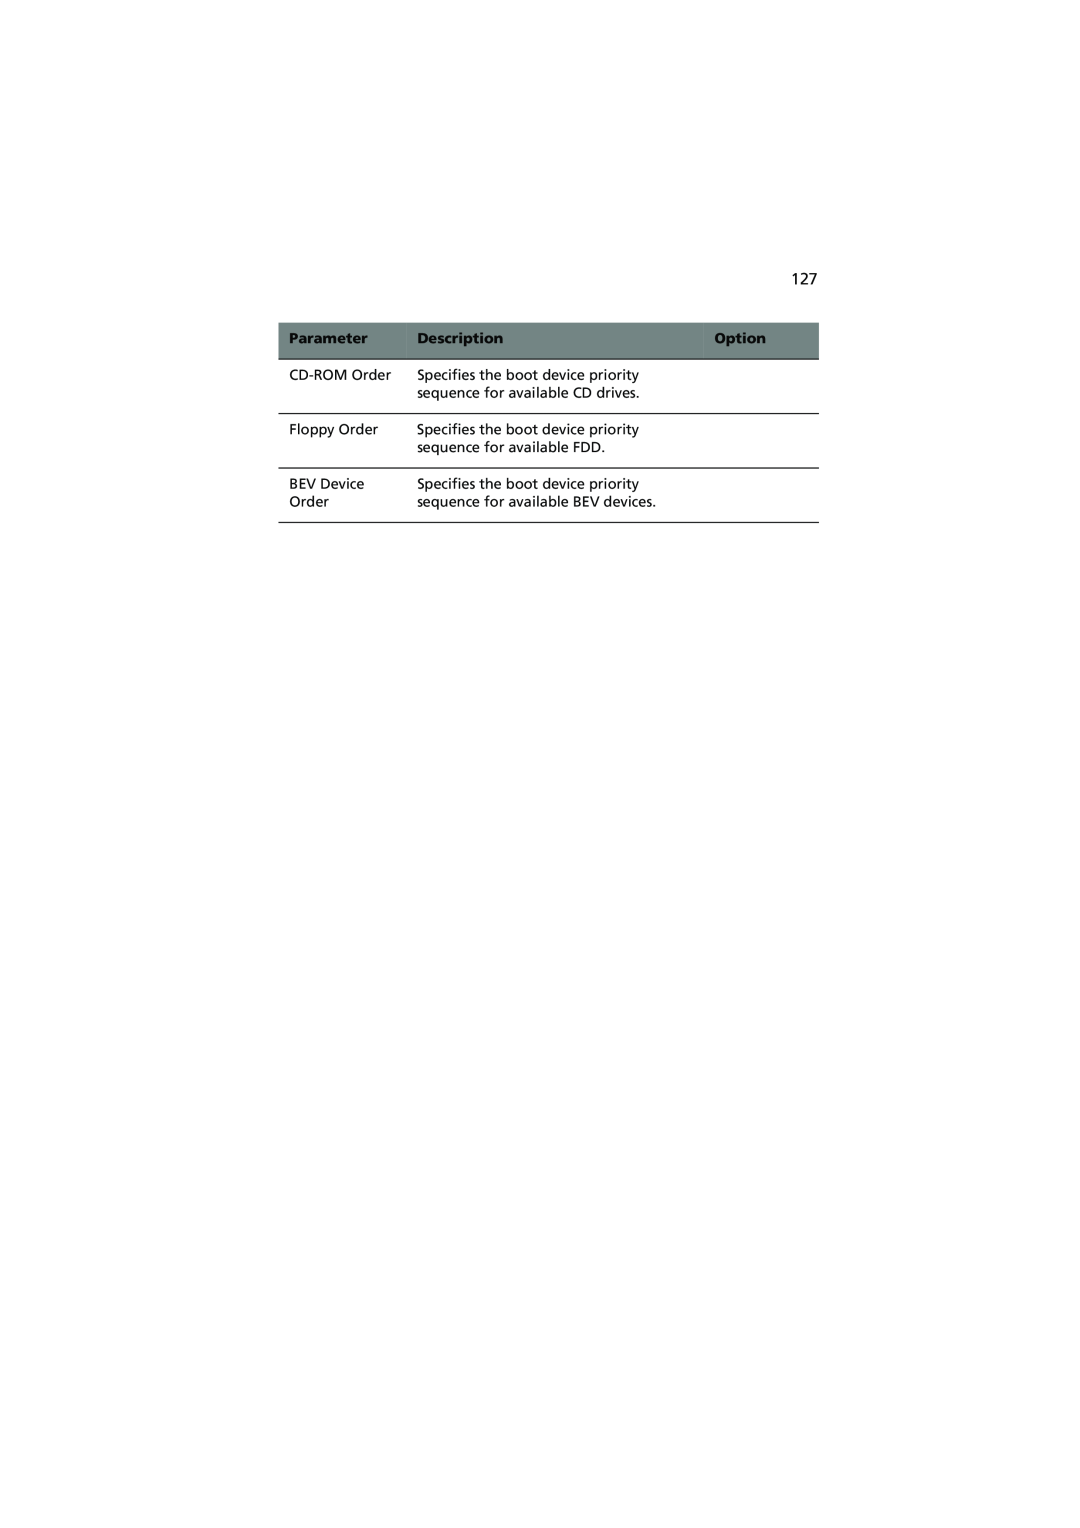 Acer R720 Series manual Parameter, Description, Option 